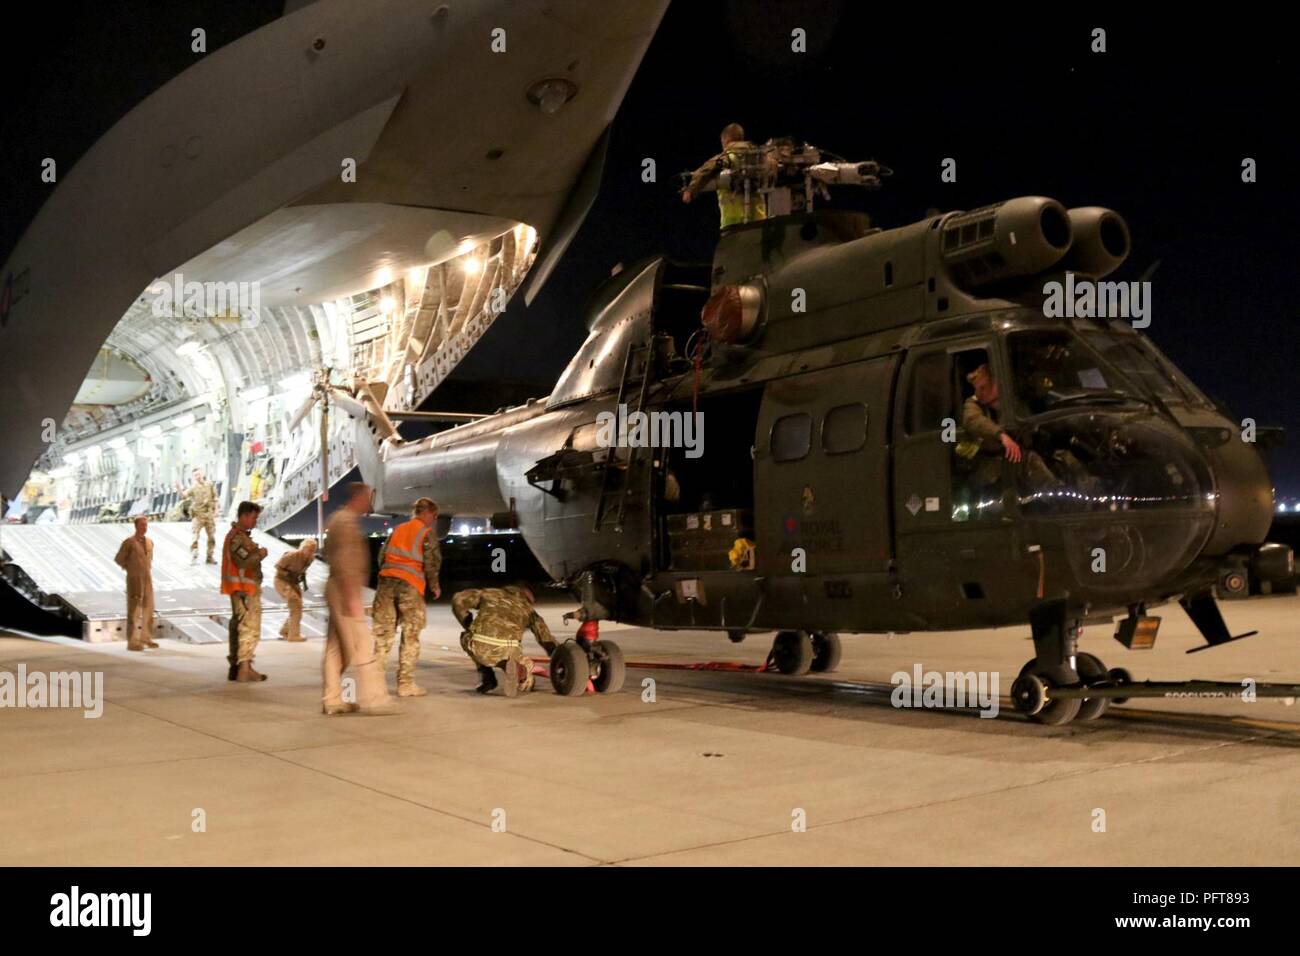 Kaboul, Afghanistan (20 mai 2018) - Les membres de la Royal Air Force britannique se préparent à charger un puma HC Mk2 à bord d'un hélicoptère de soutien moyen Royal Air Force C-17 Globemaster III, à l'Aéroport International d'Hamid Karzai à Kaboul, Afghanistan, le 20 mai 2018. Ce Puma sera de retour au Royaume-Uni pour l'entretien de routine. (Appui résolu Banque D'Images